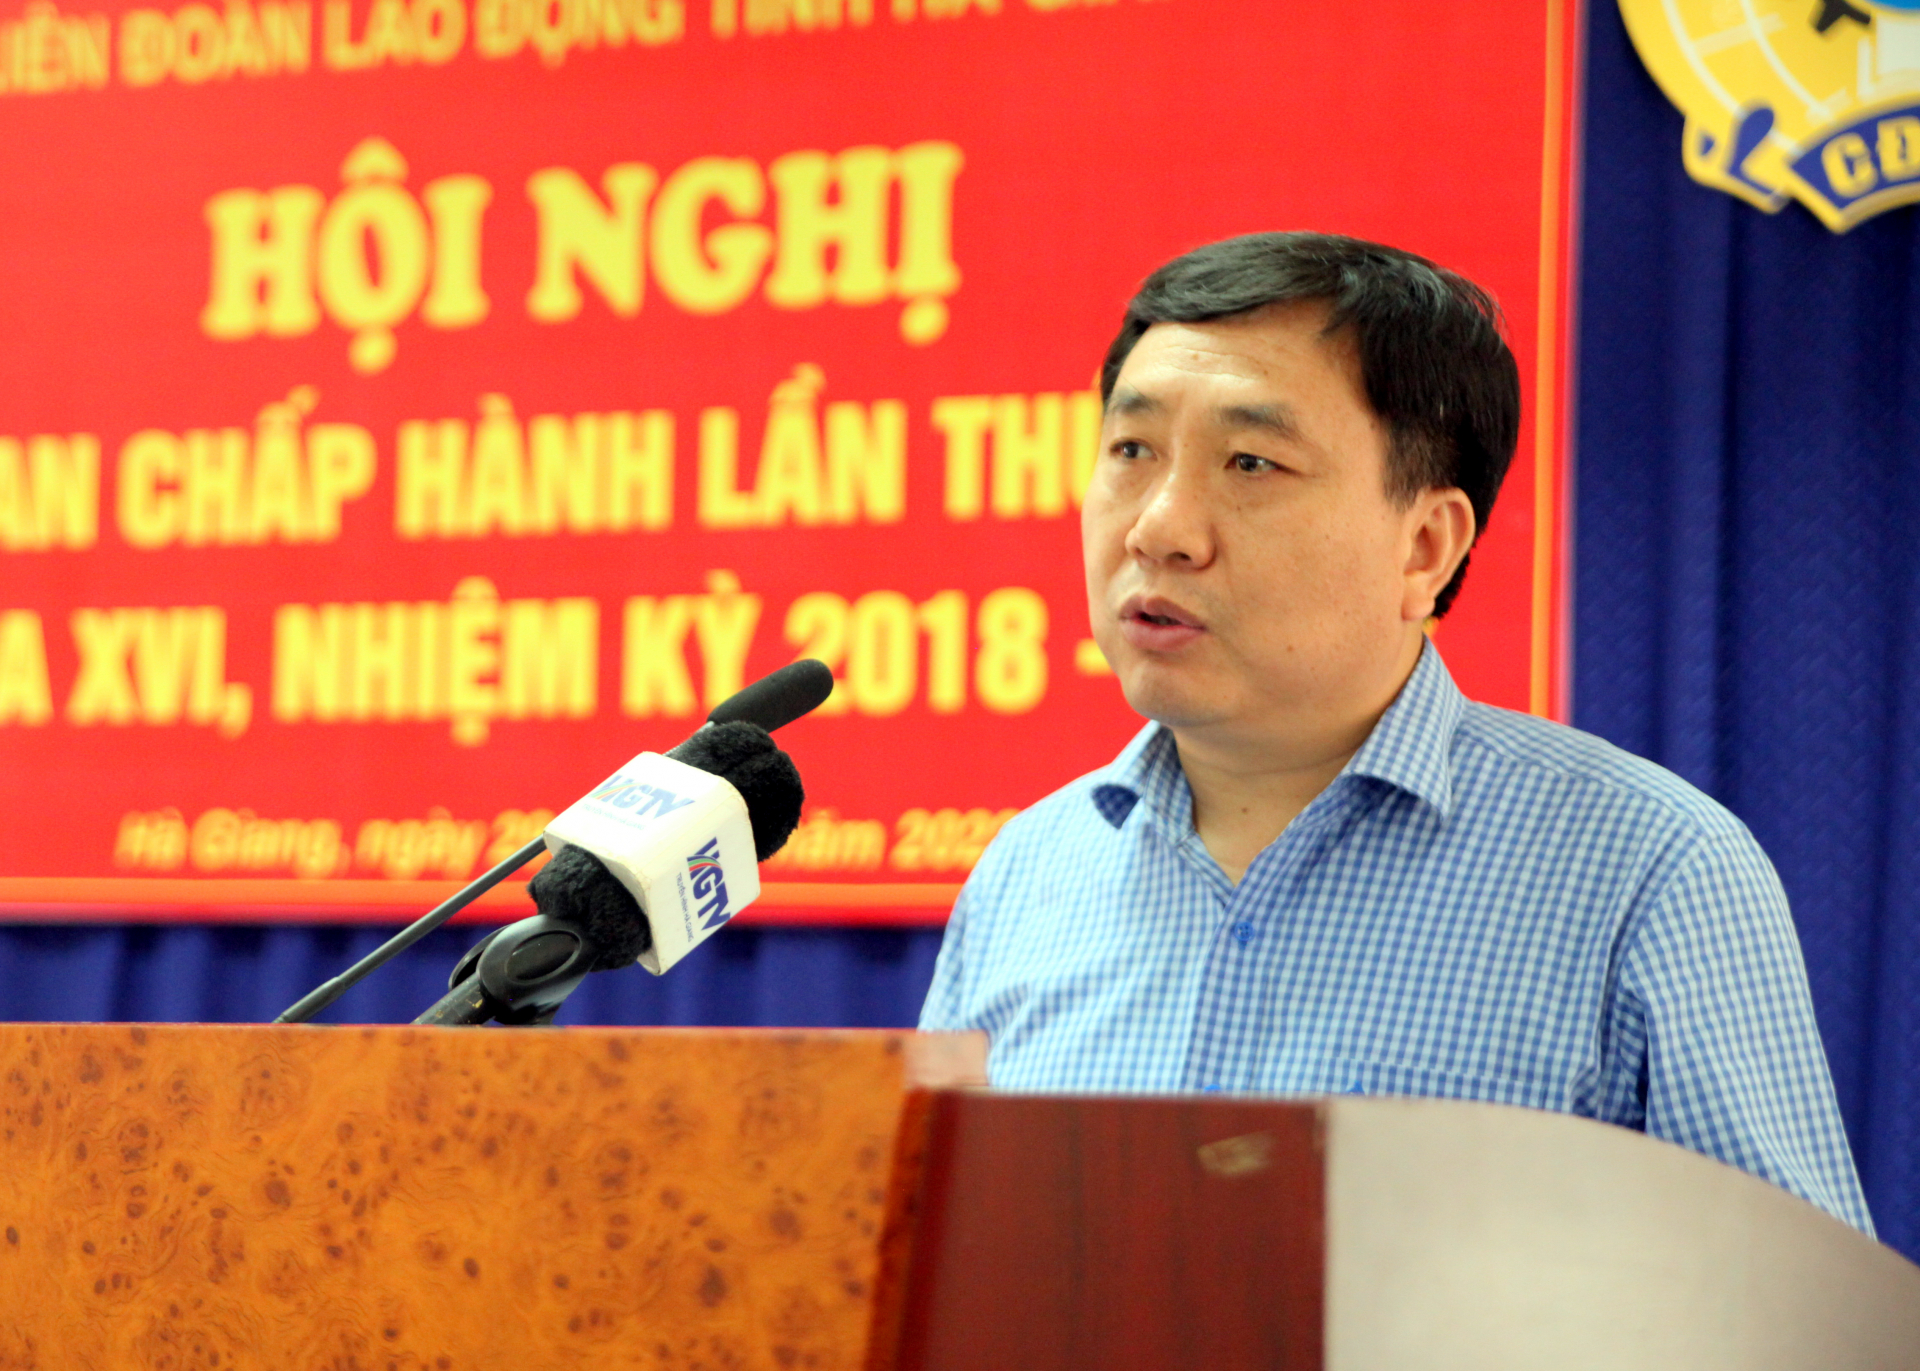 Phó Bí thư Tỉnh ủy Nguyễn Mạnh Dũng phát biểu chỉ đạo hội nghị.